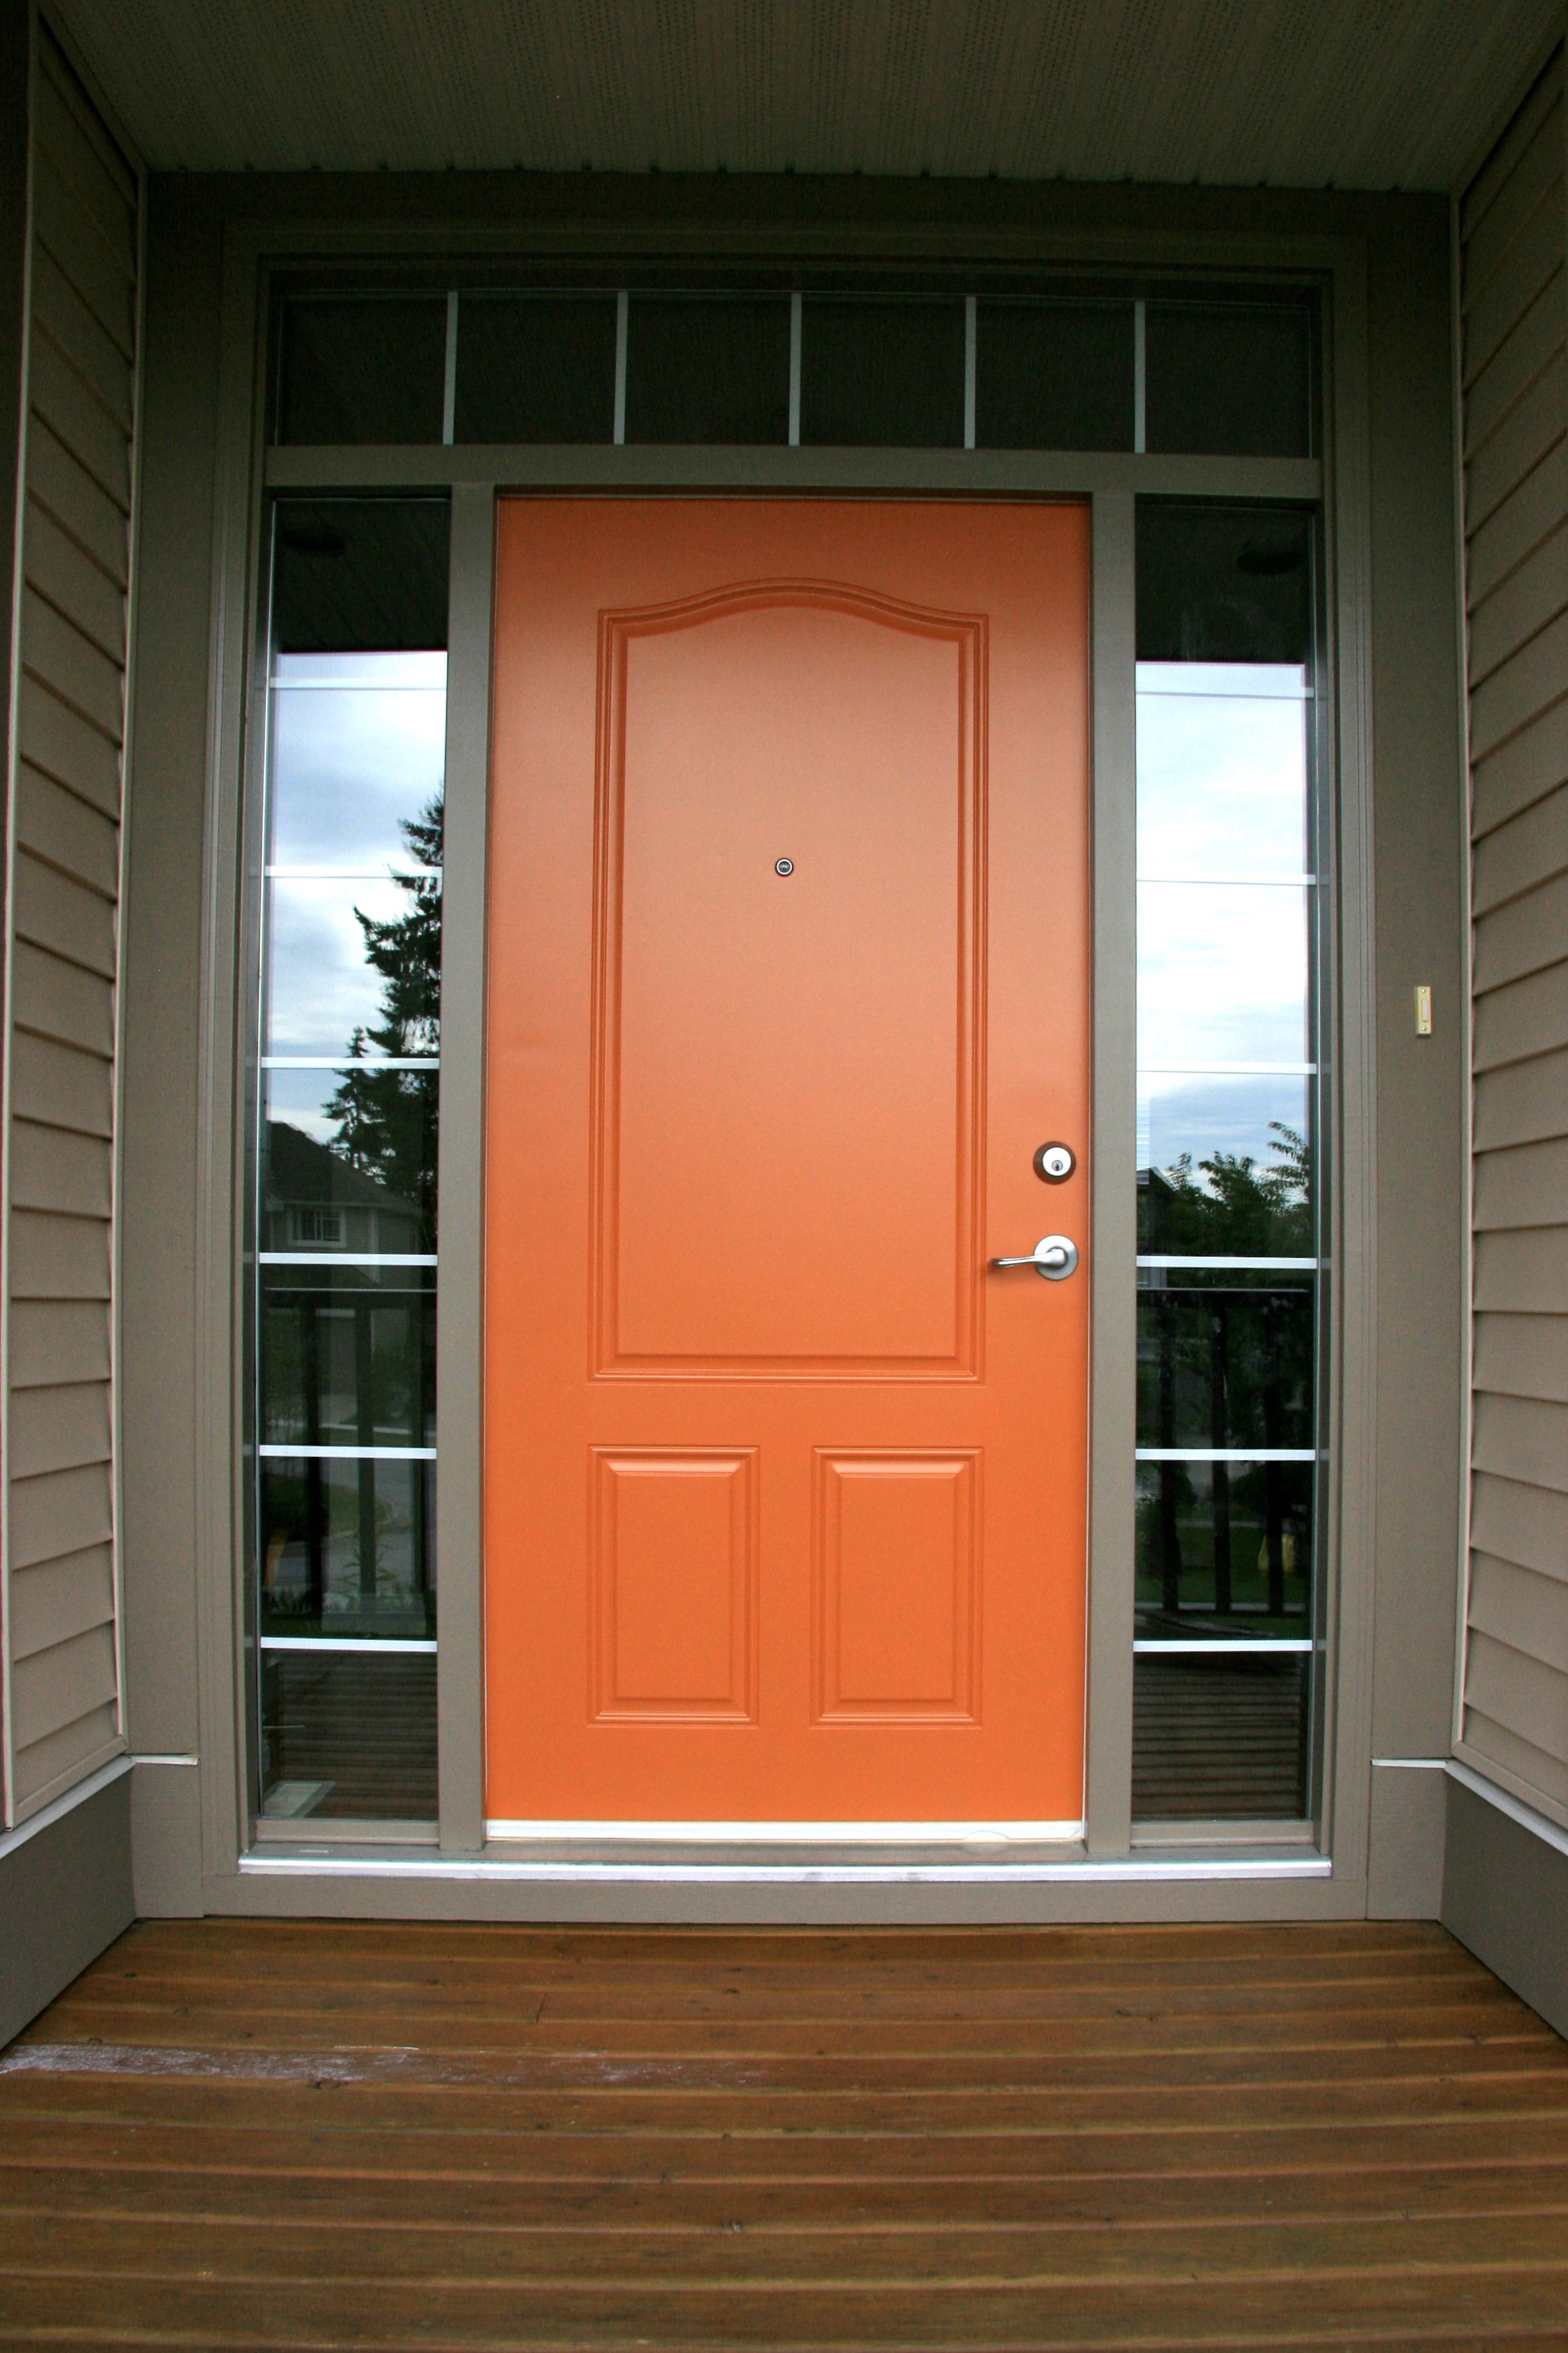 Gallery In 2020 Orange Front Doors Painted Front Doors